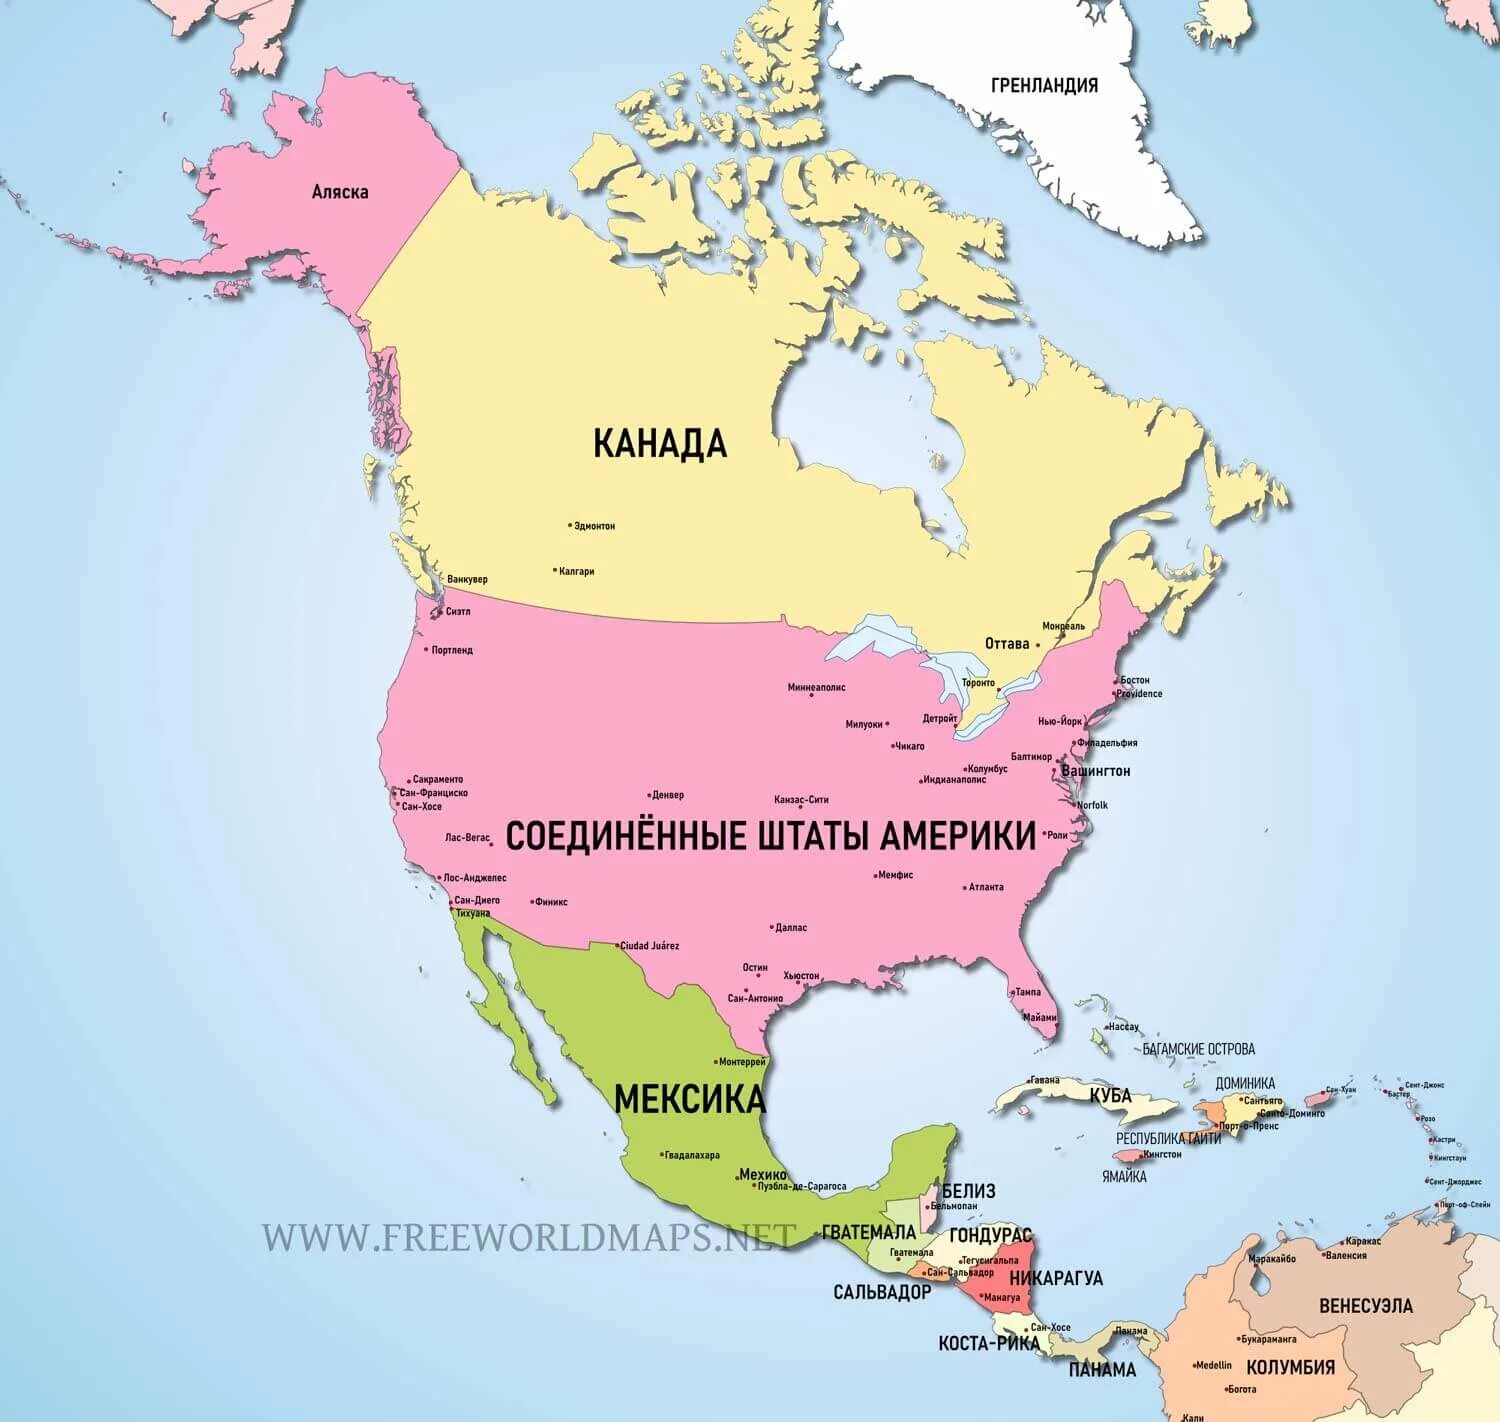 Большая часть северной америки говорит на. Карта Северной Америки со странами крупно на русском. Северная Америка на карте со странами и столицами на русском языке. Карта стран Северной Америки на русском языке. Северная Америка карта со странами на русском языке крупно.